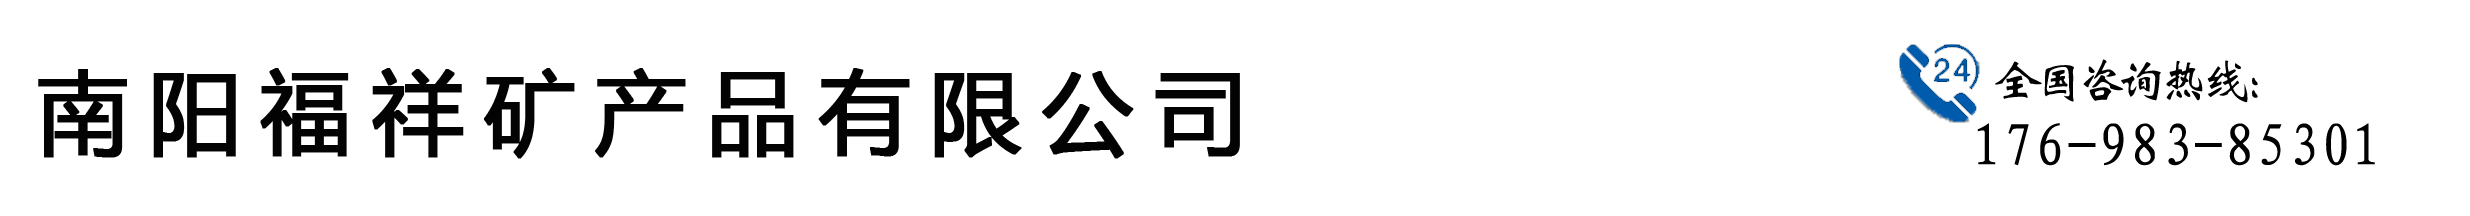 南召福祥矿产_Logo